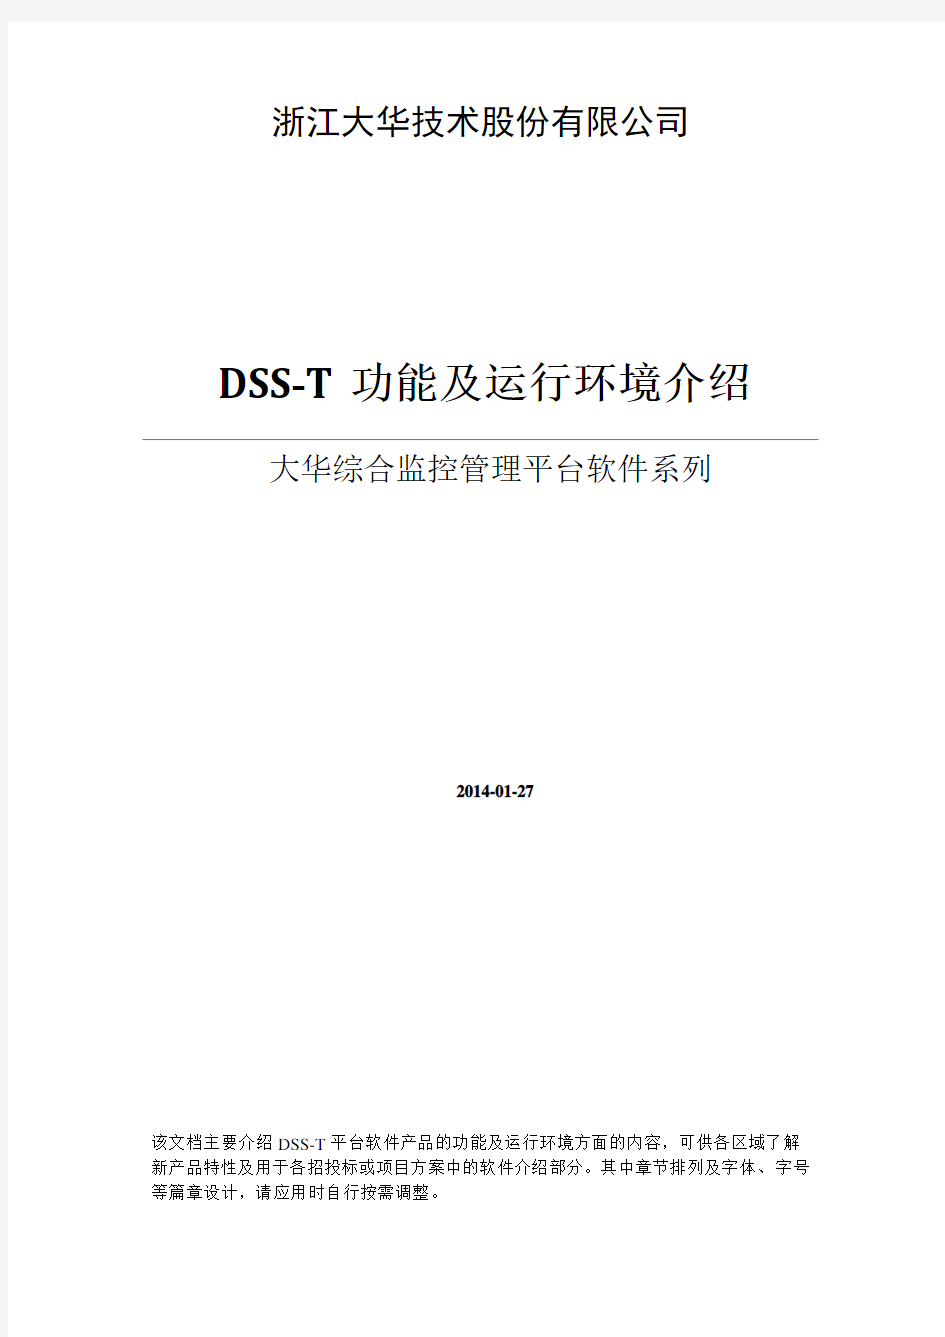 大华综合监控管理平台软件(DSS-T)功能和环境描述(方案用)